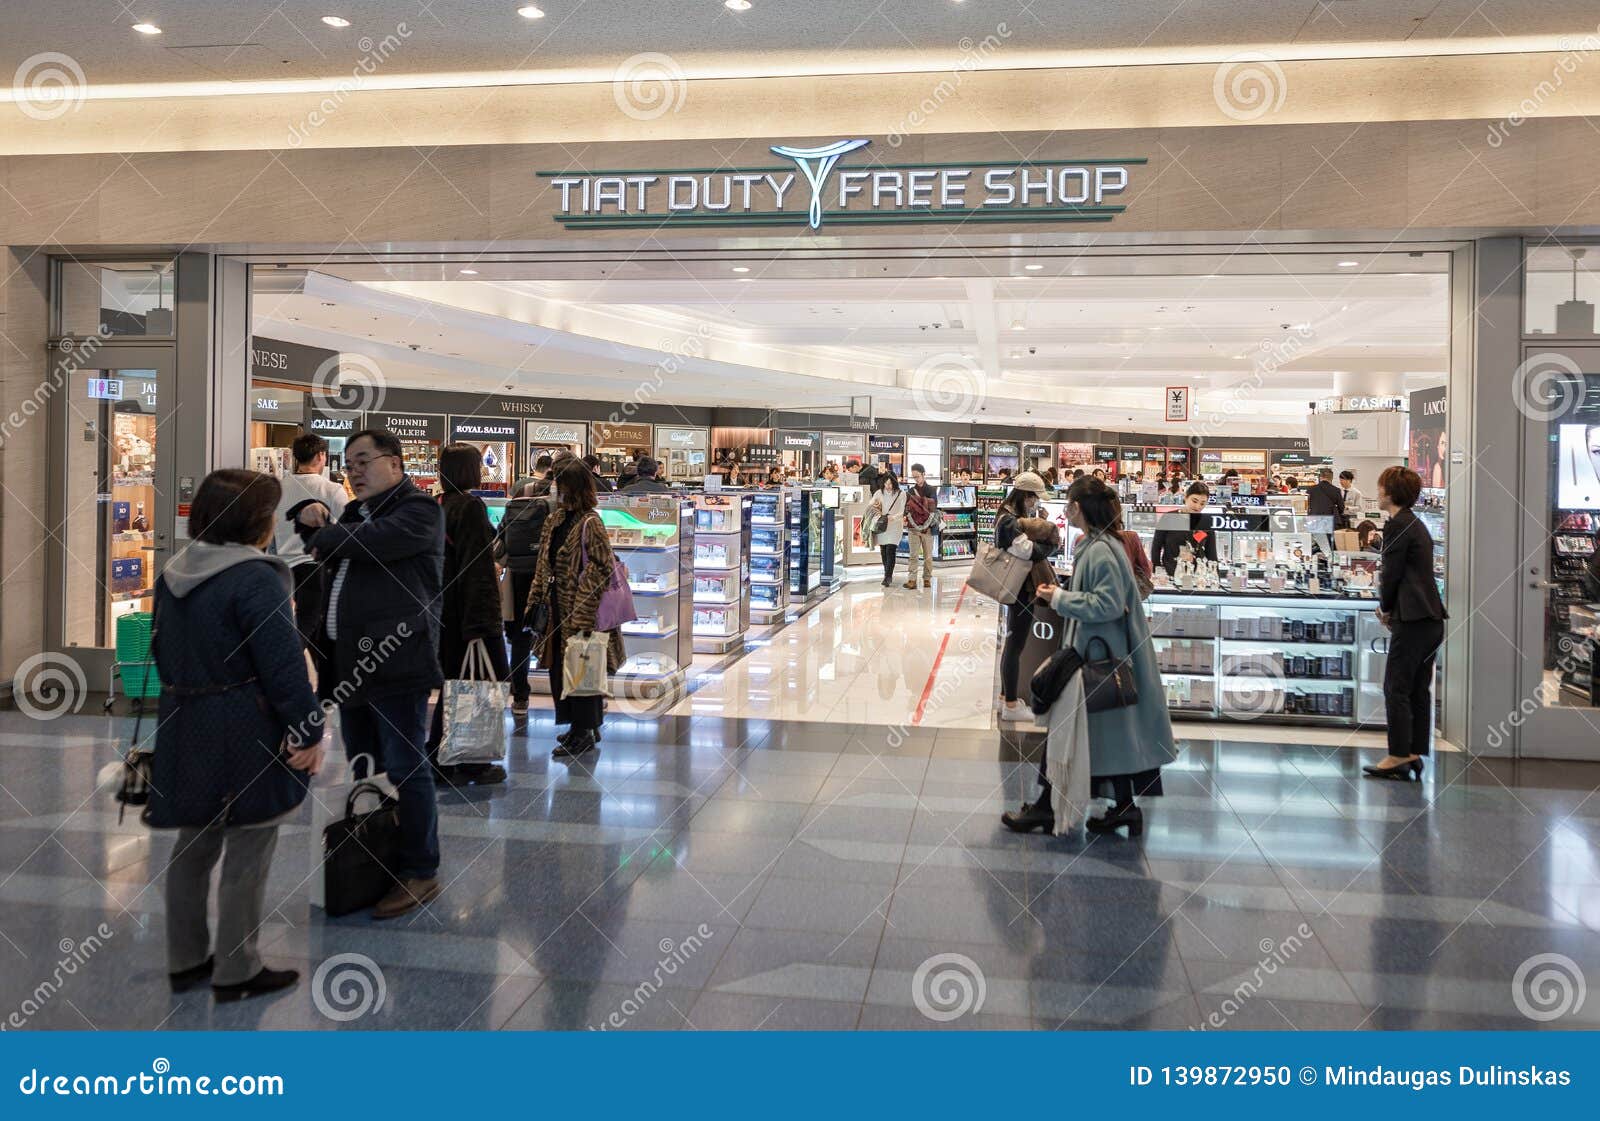 jeg er glad Uafhængig Punktlighed Haneda Airport Shop Photos - Free & Royalty-Free Stock Photos from  Dreamstime